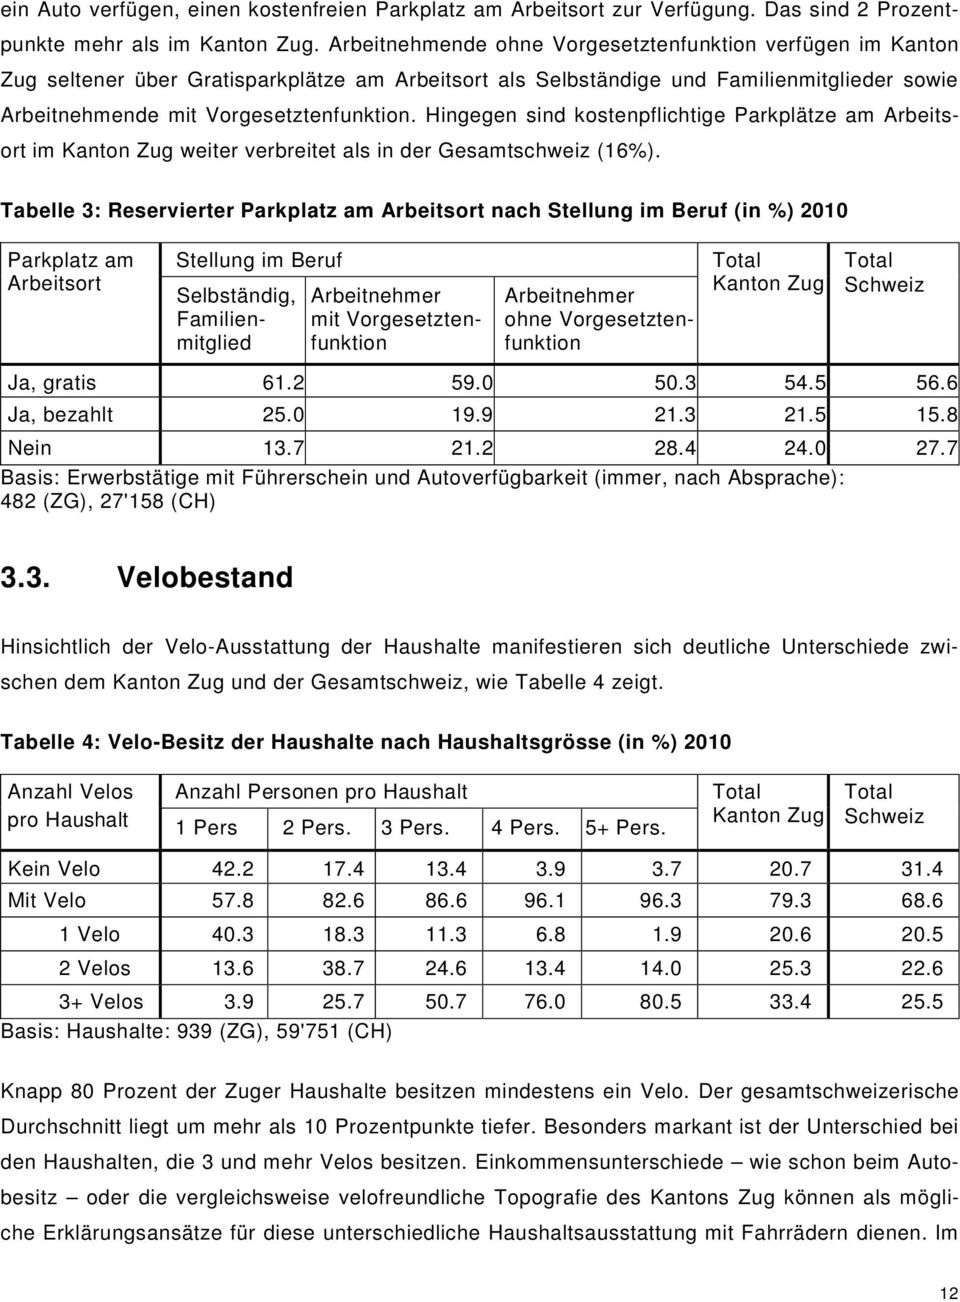 Hingegen sind kostenpflichtige Parkplätze am Arbeitsort im Kanton Zug weiter verbreitet als in der Gesamtschweiz (16%).